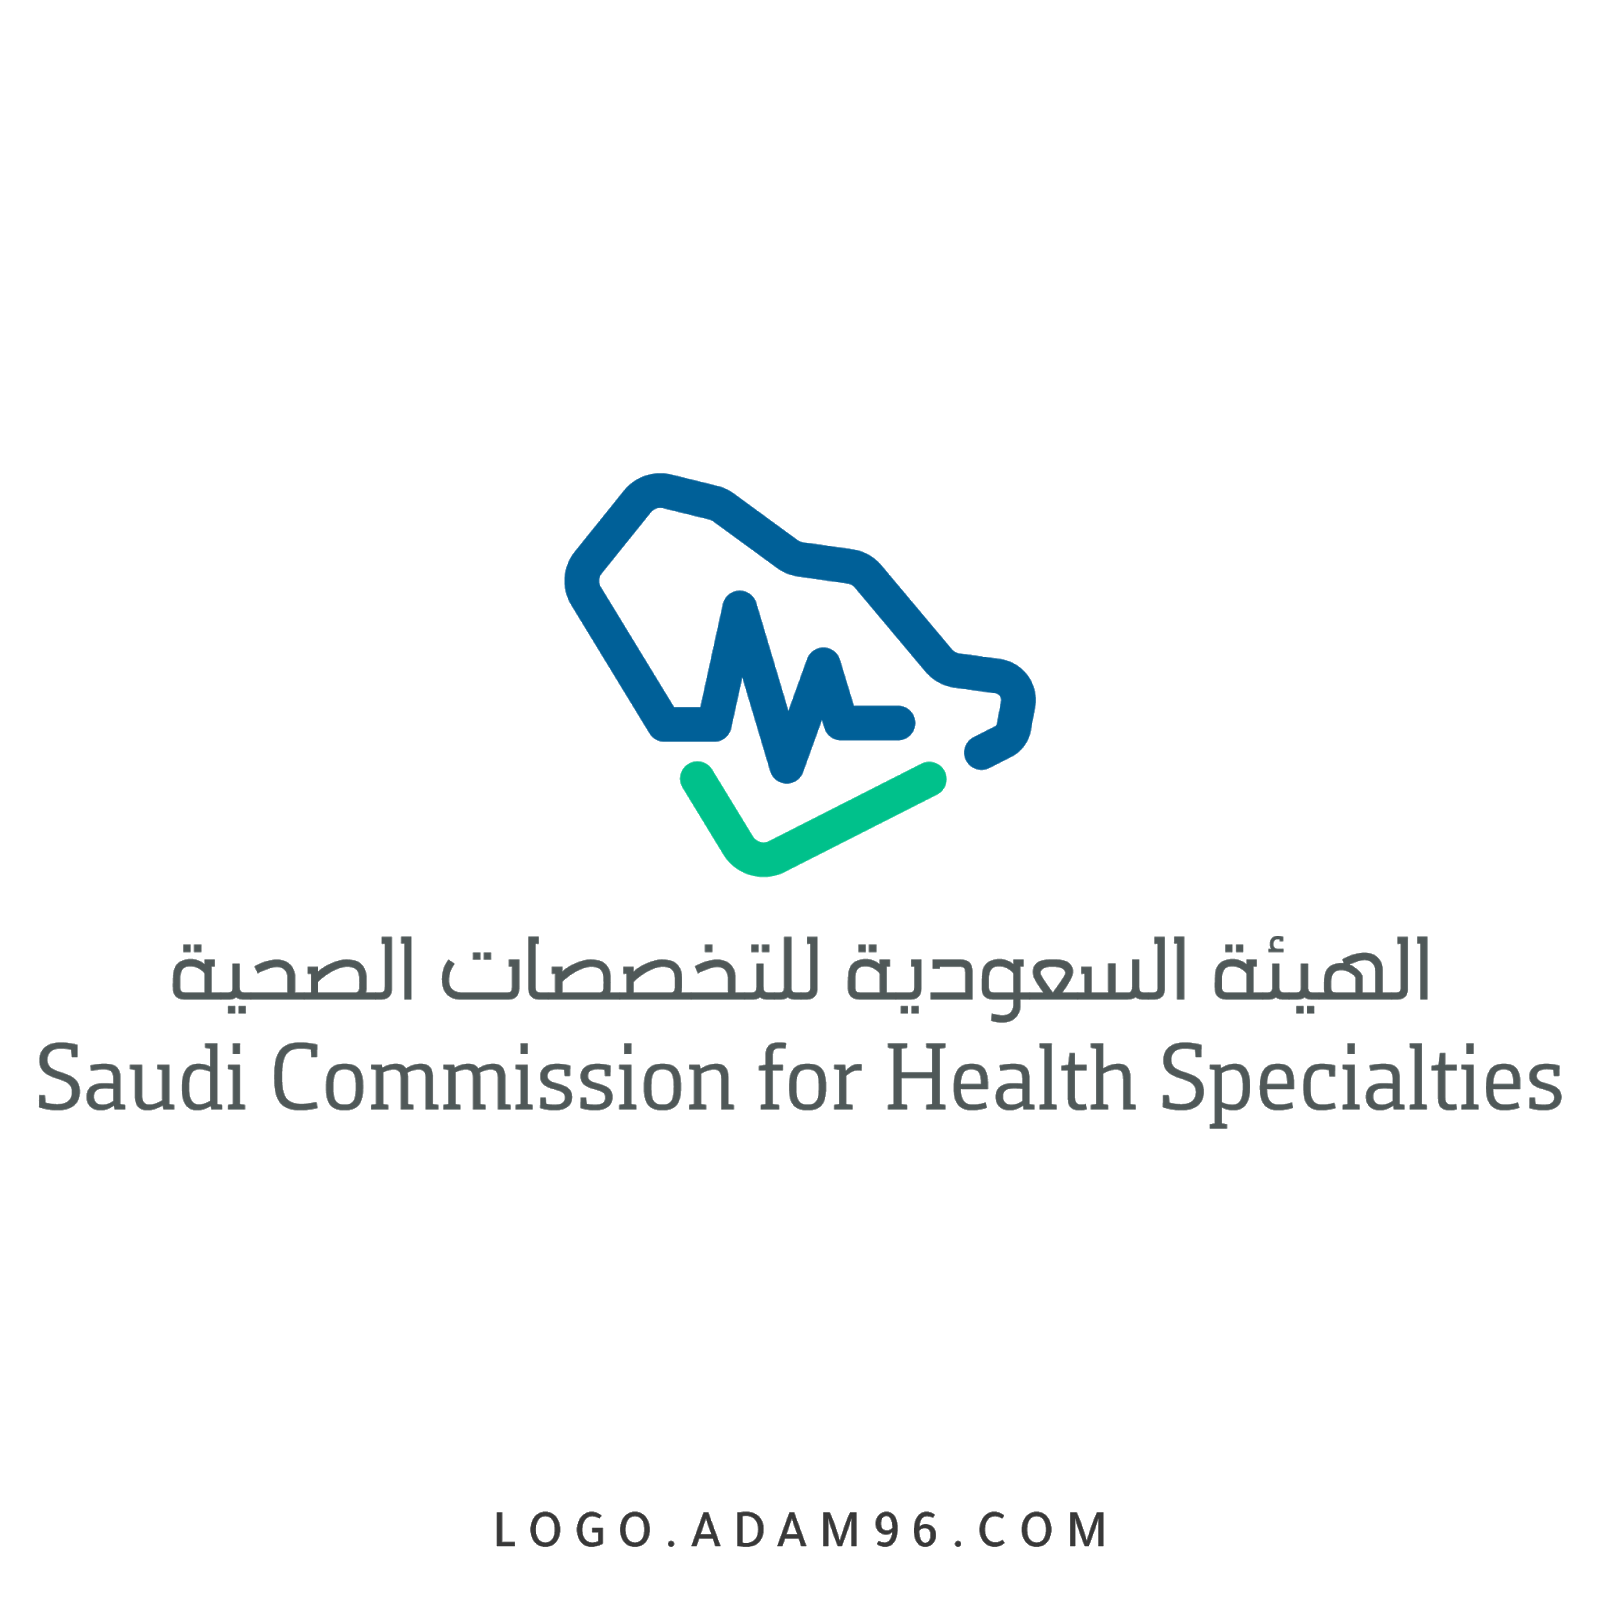 رقم هيئة التخصصات الصحية السعودية الموحد واتساب 1445